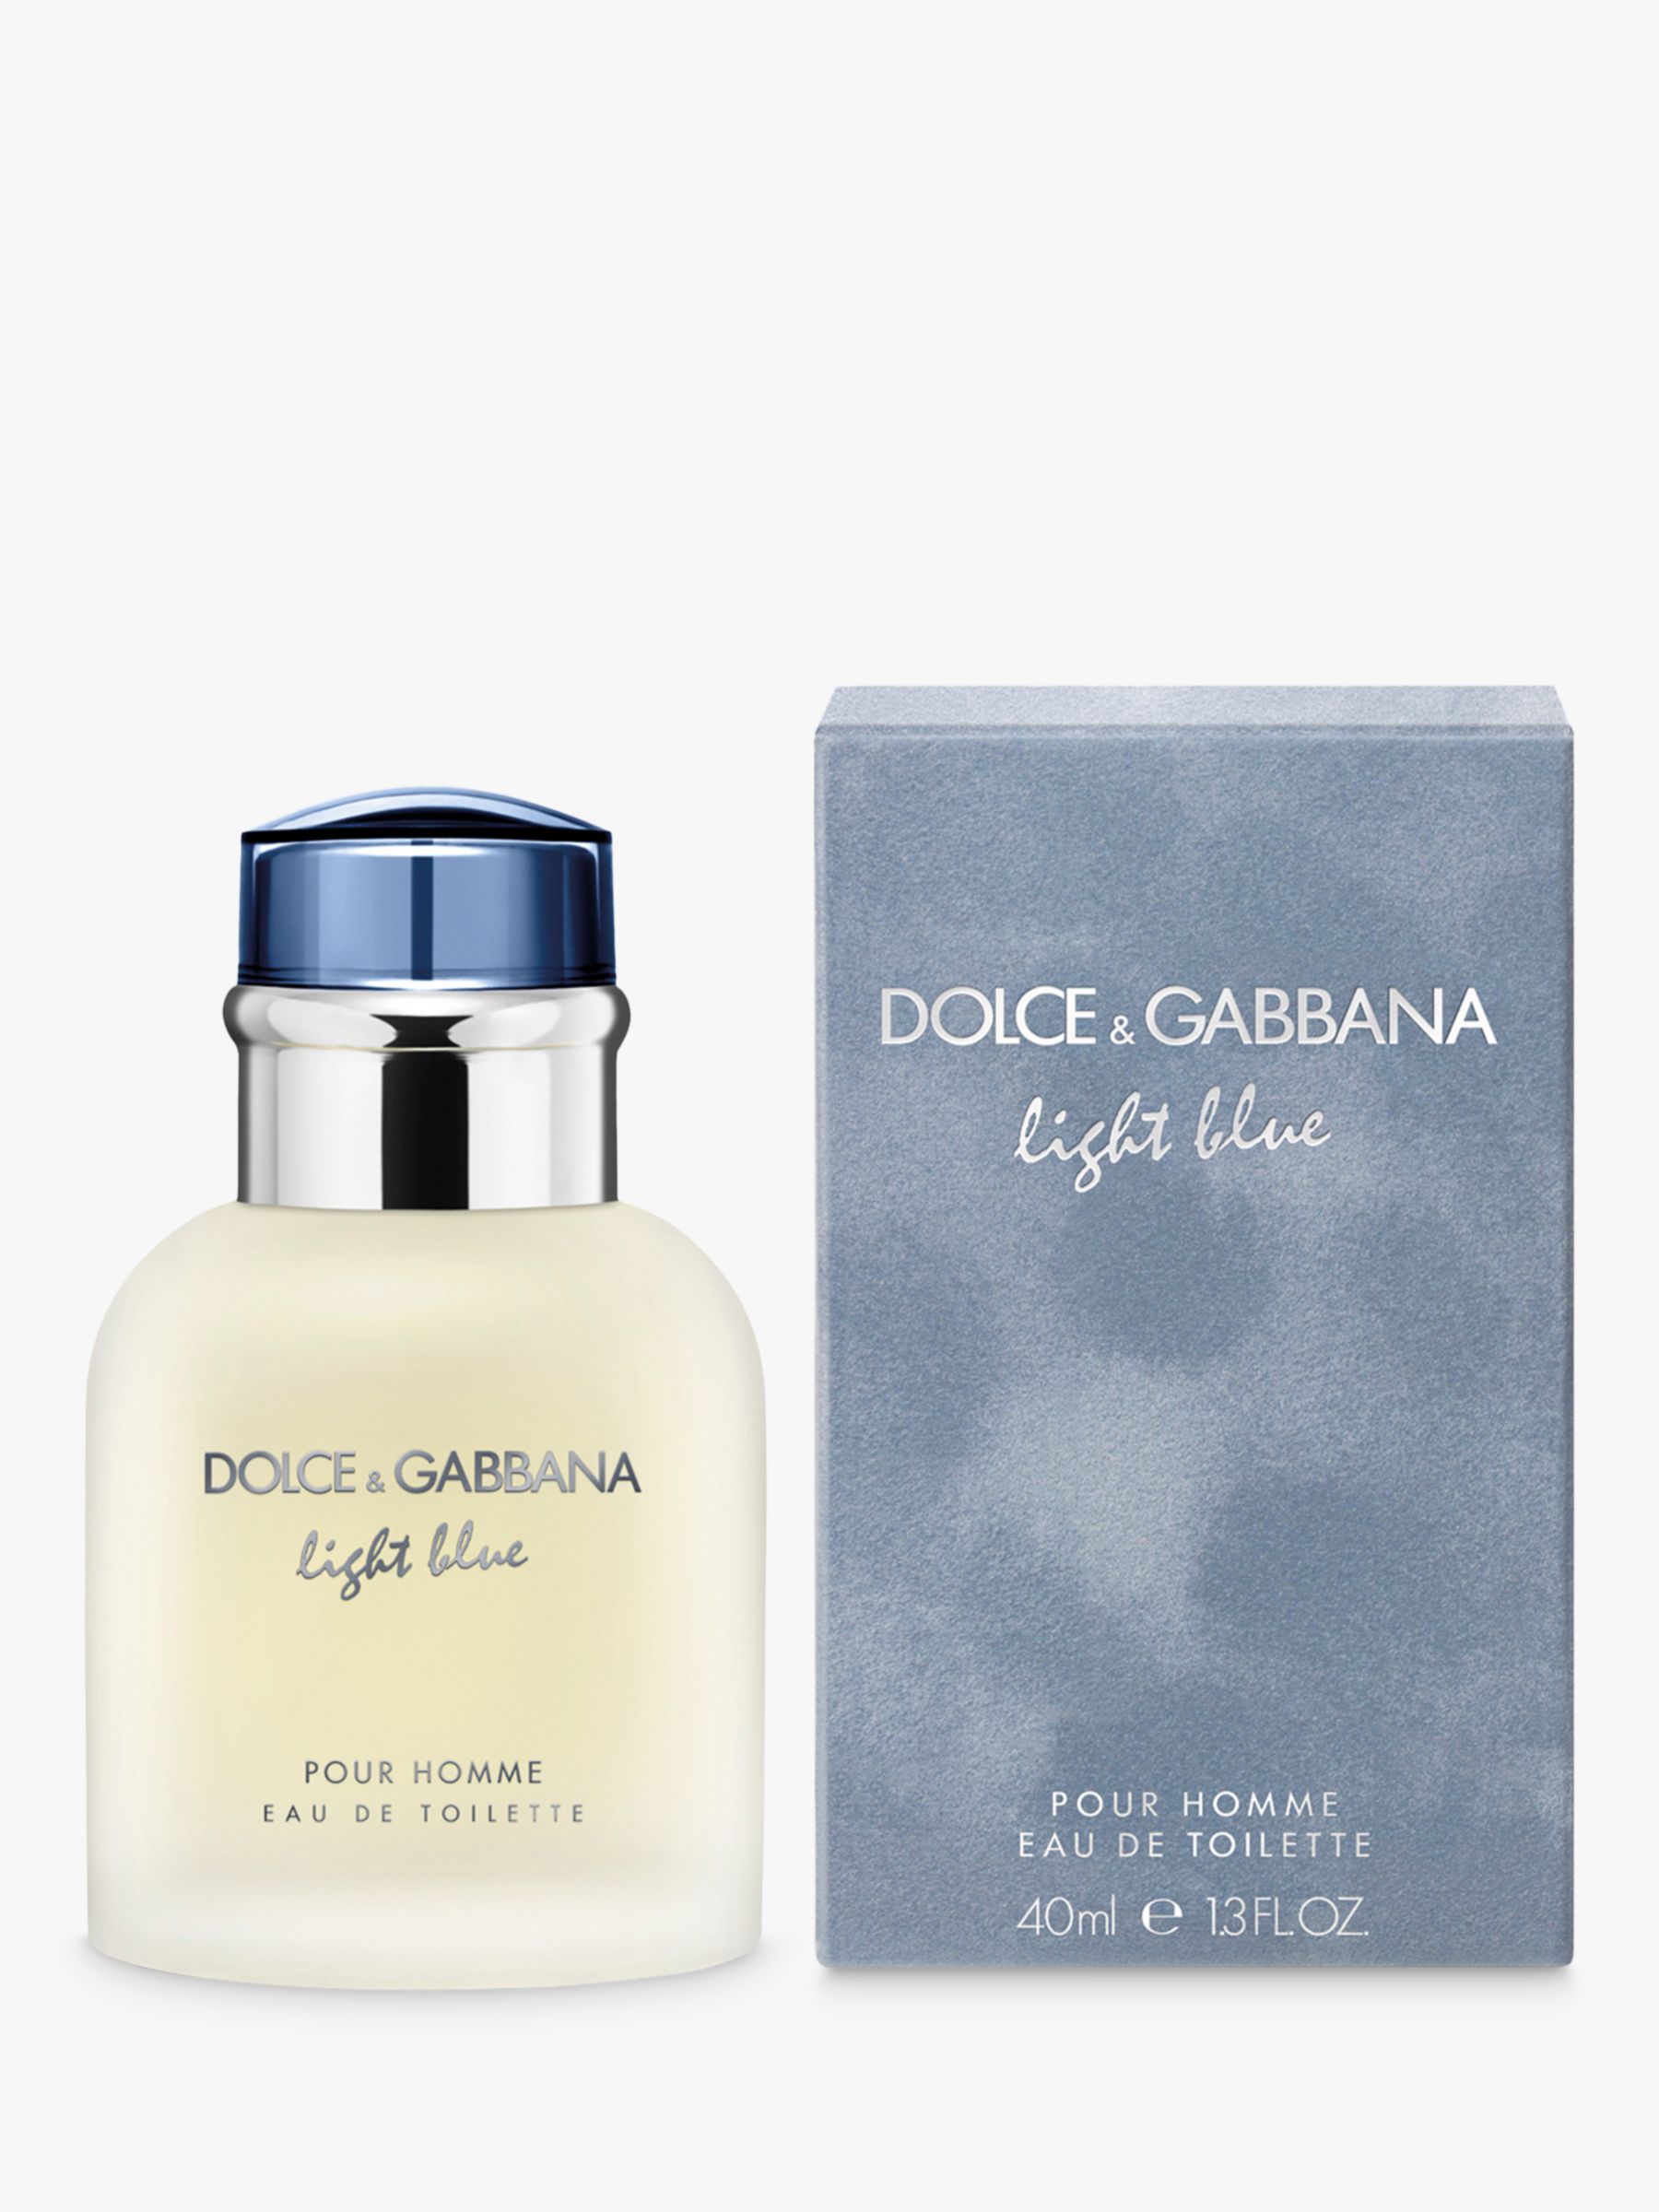 Dolce & Gabbana Light Blue Pour Homme Eau de Toilette, 40ml